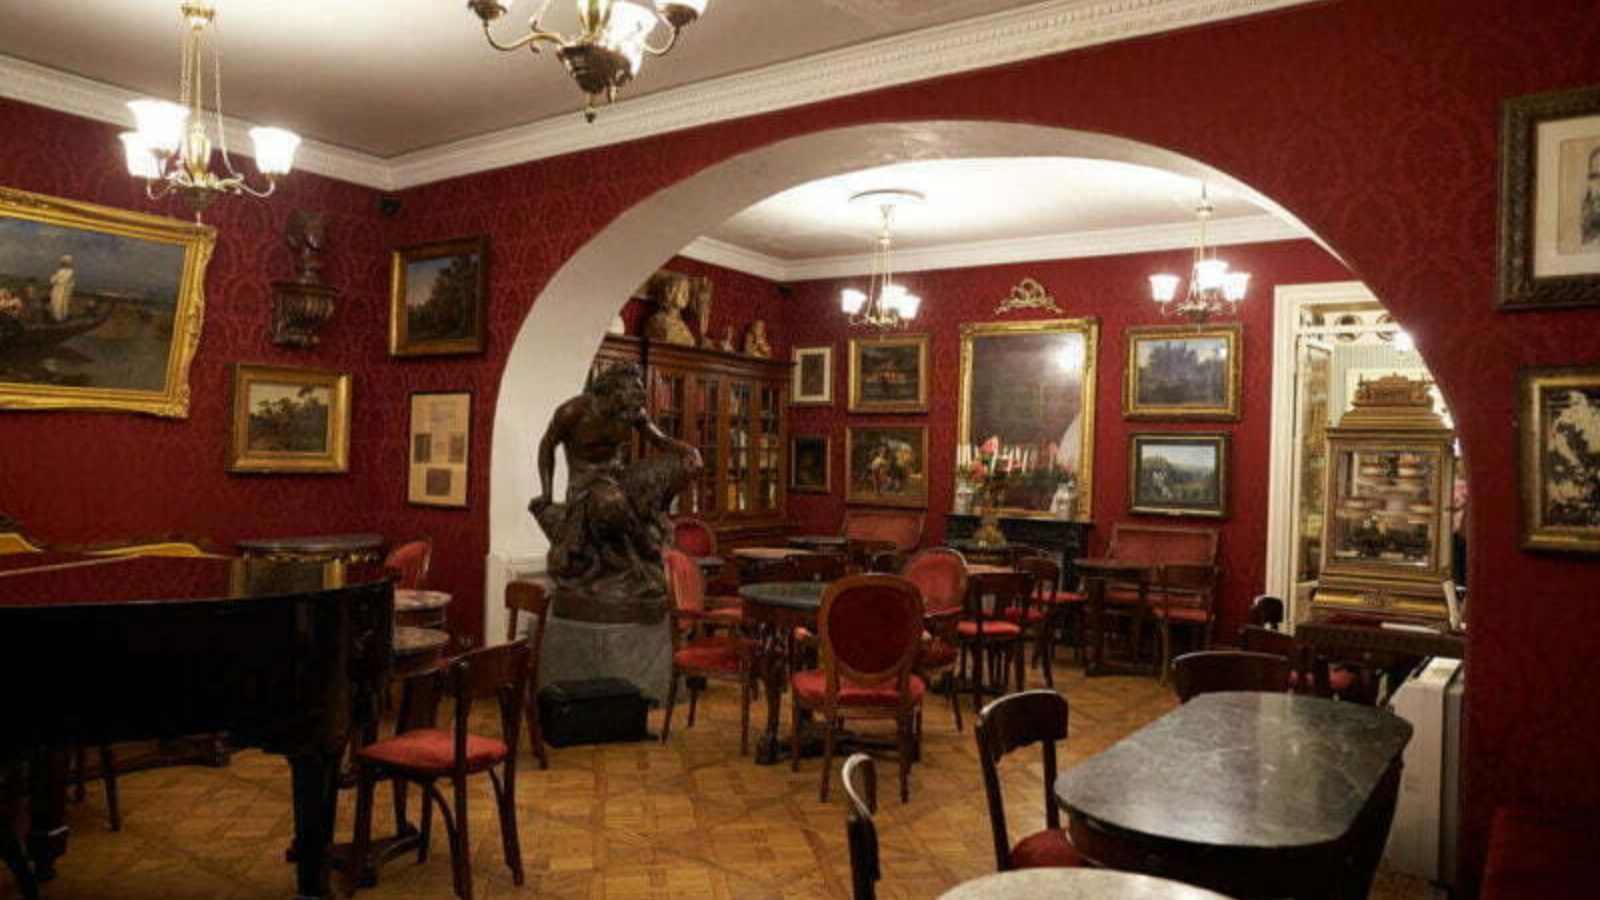 bức tượng nghệ thuật và nhiều bức tranh ảnh trong quán Caffe Greco, Rome, Ý với tone màu đỏ đô chủ đạo